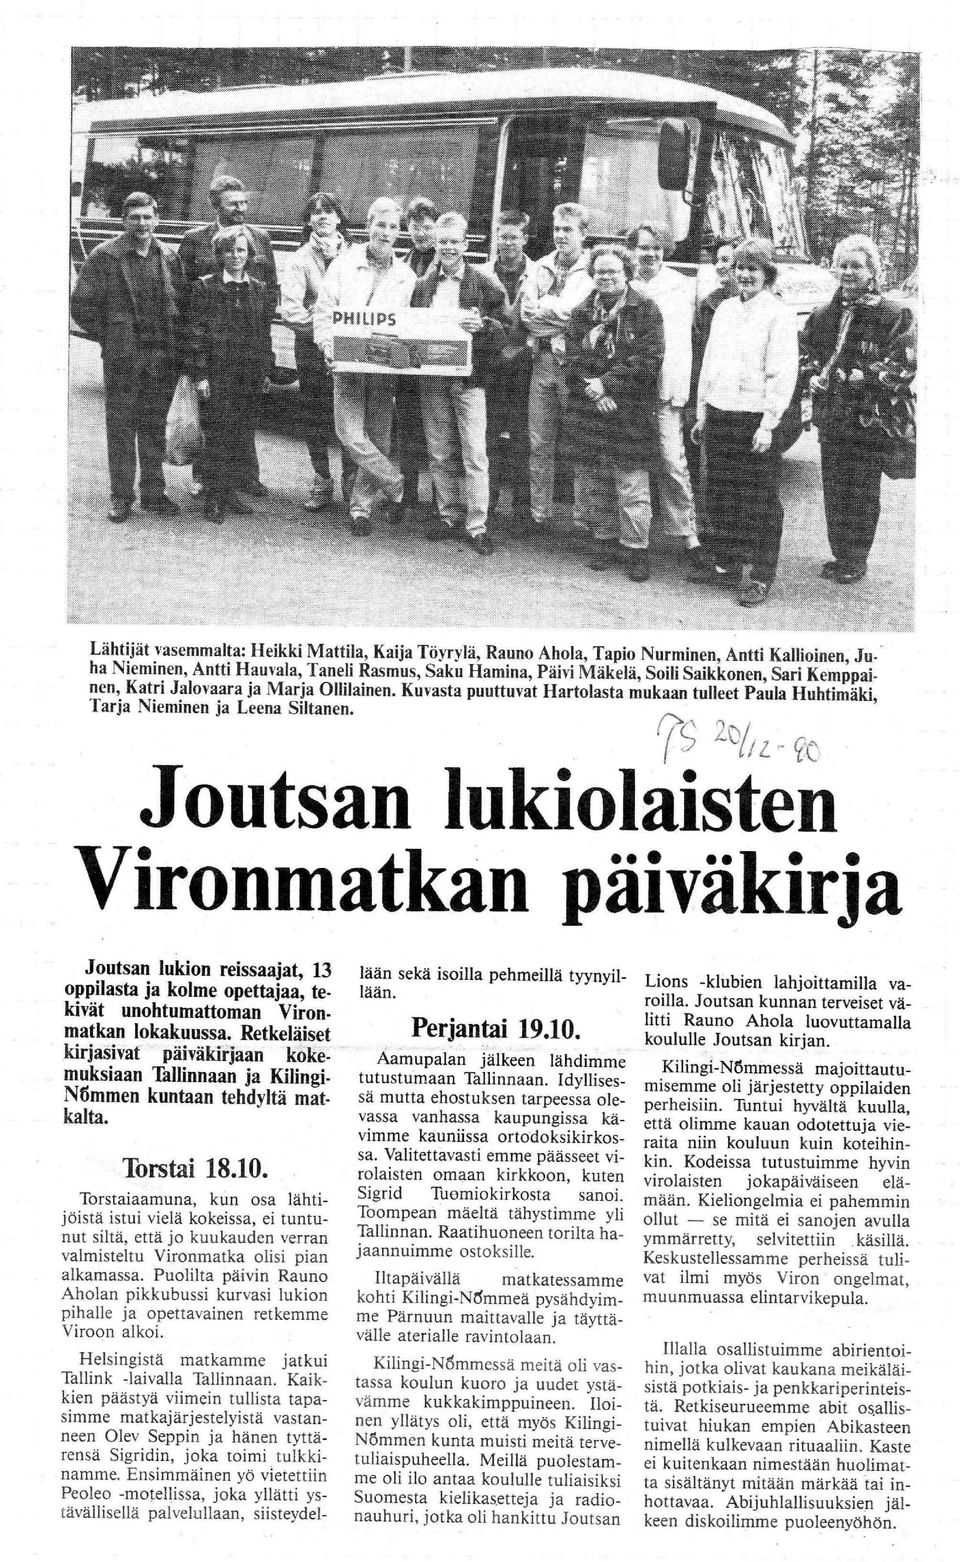 tt L-_ Joutsan lukiolaisten Vironmatkan paivakirja Joutsan lukion reissaajat, 13 oppilasta ja kolme opettajaa, tekivat unohtumattoman Vironmatkan lokakuussa.